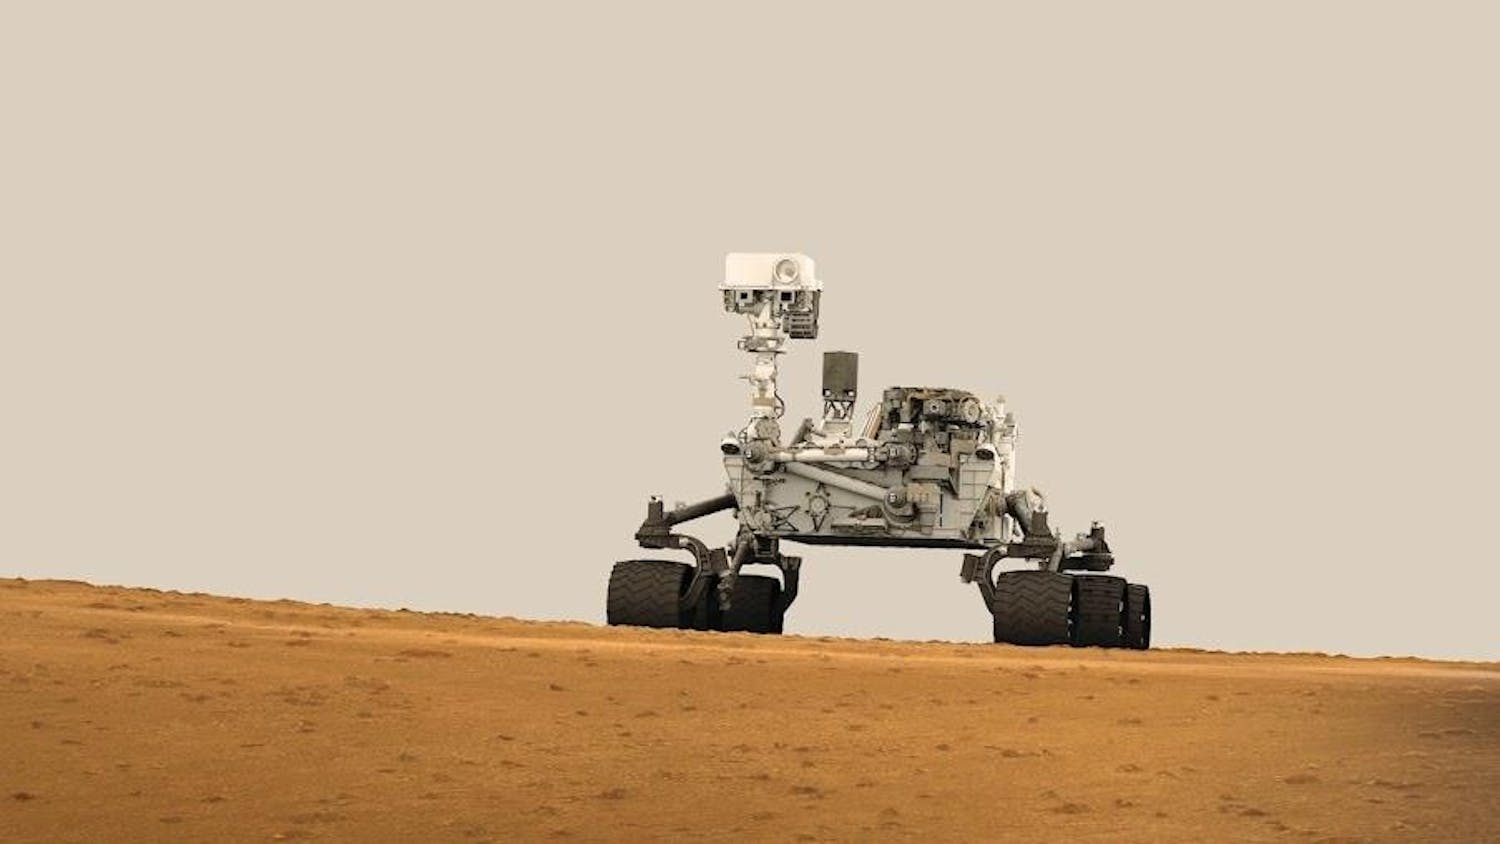 curiosity-rover-lead.jpg